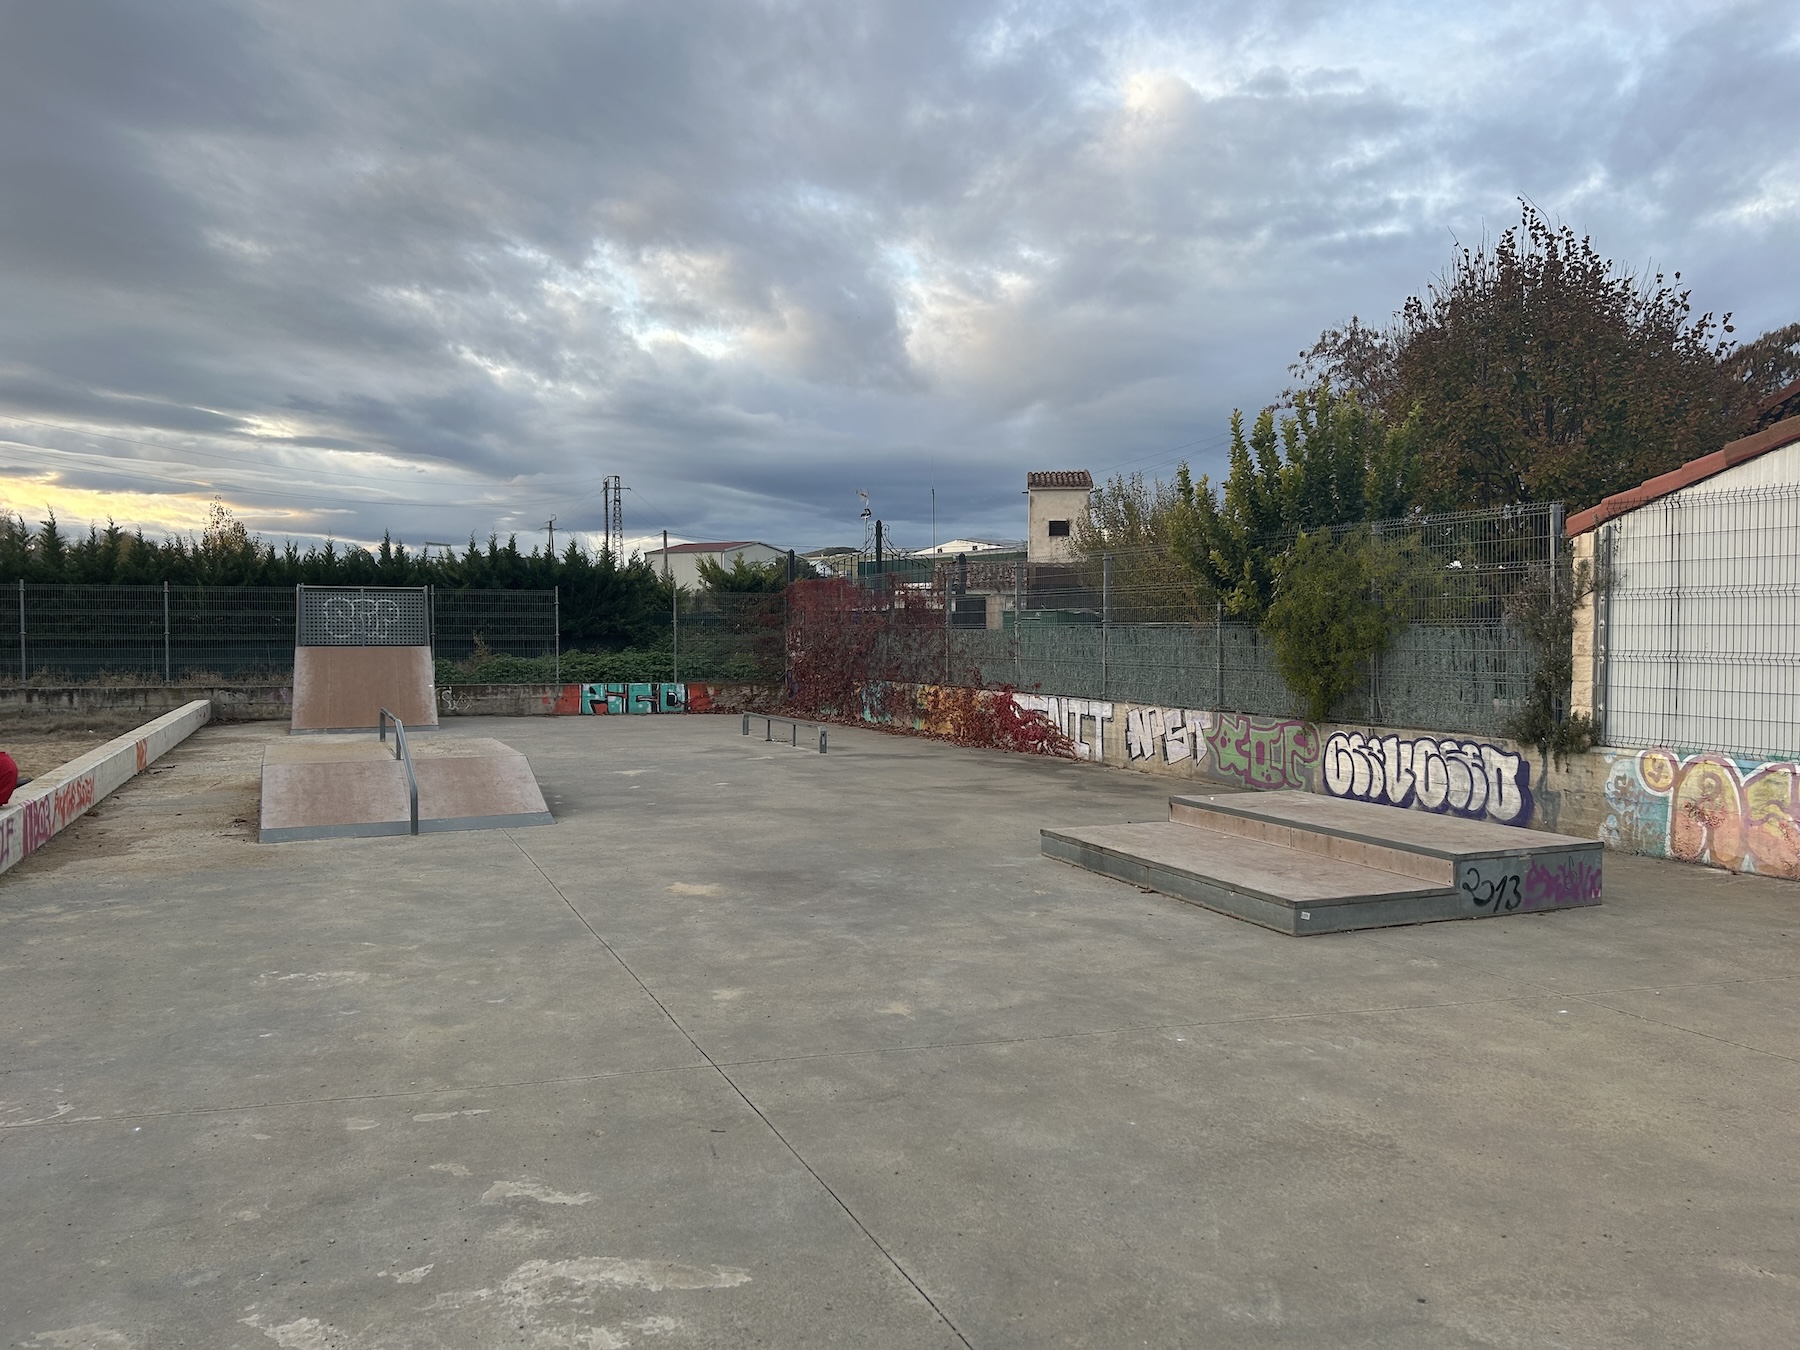 Lodosa skatepark